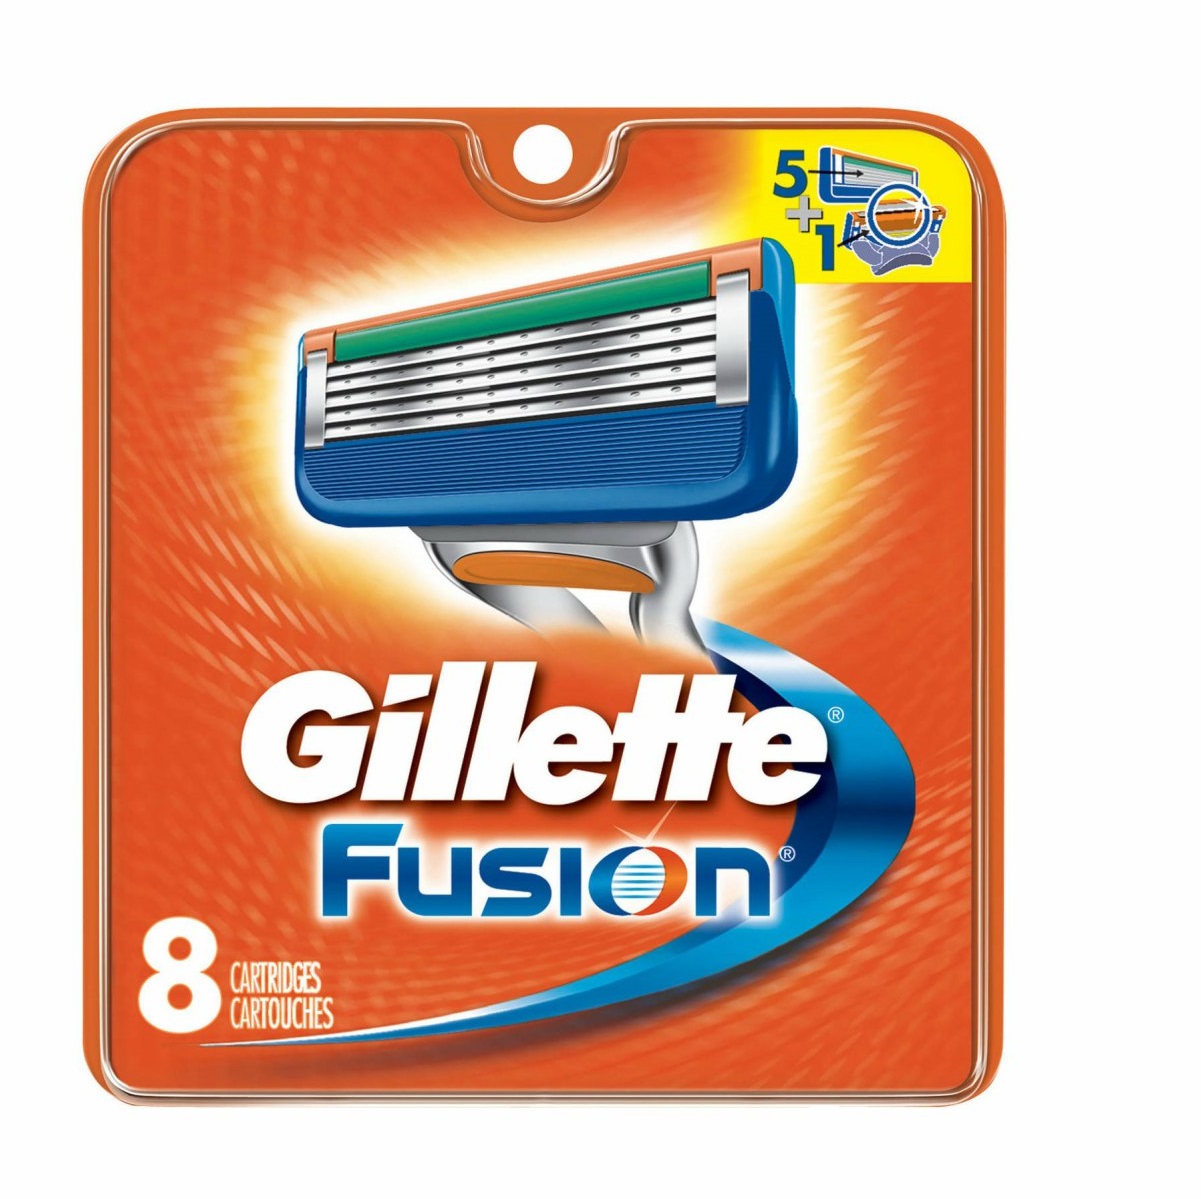 Сменные кассеты для станка Gillette Fusion 8шт сменные кассеты для бритв gillette fusion power для мужчин 2 шт